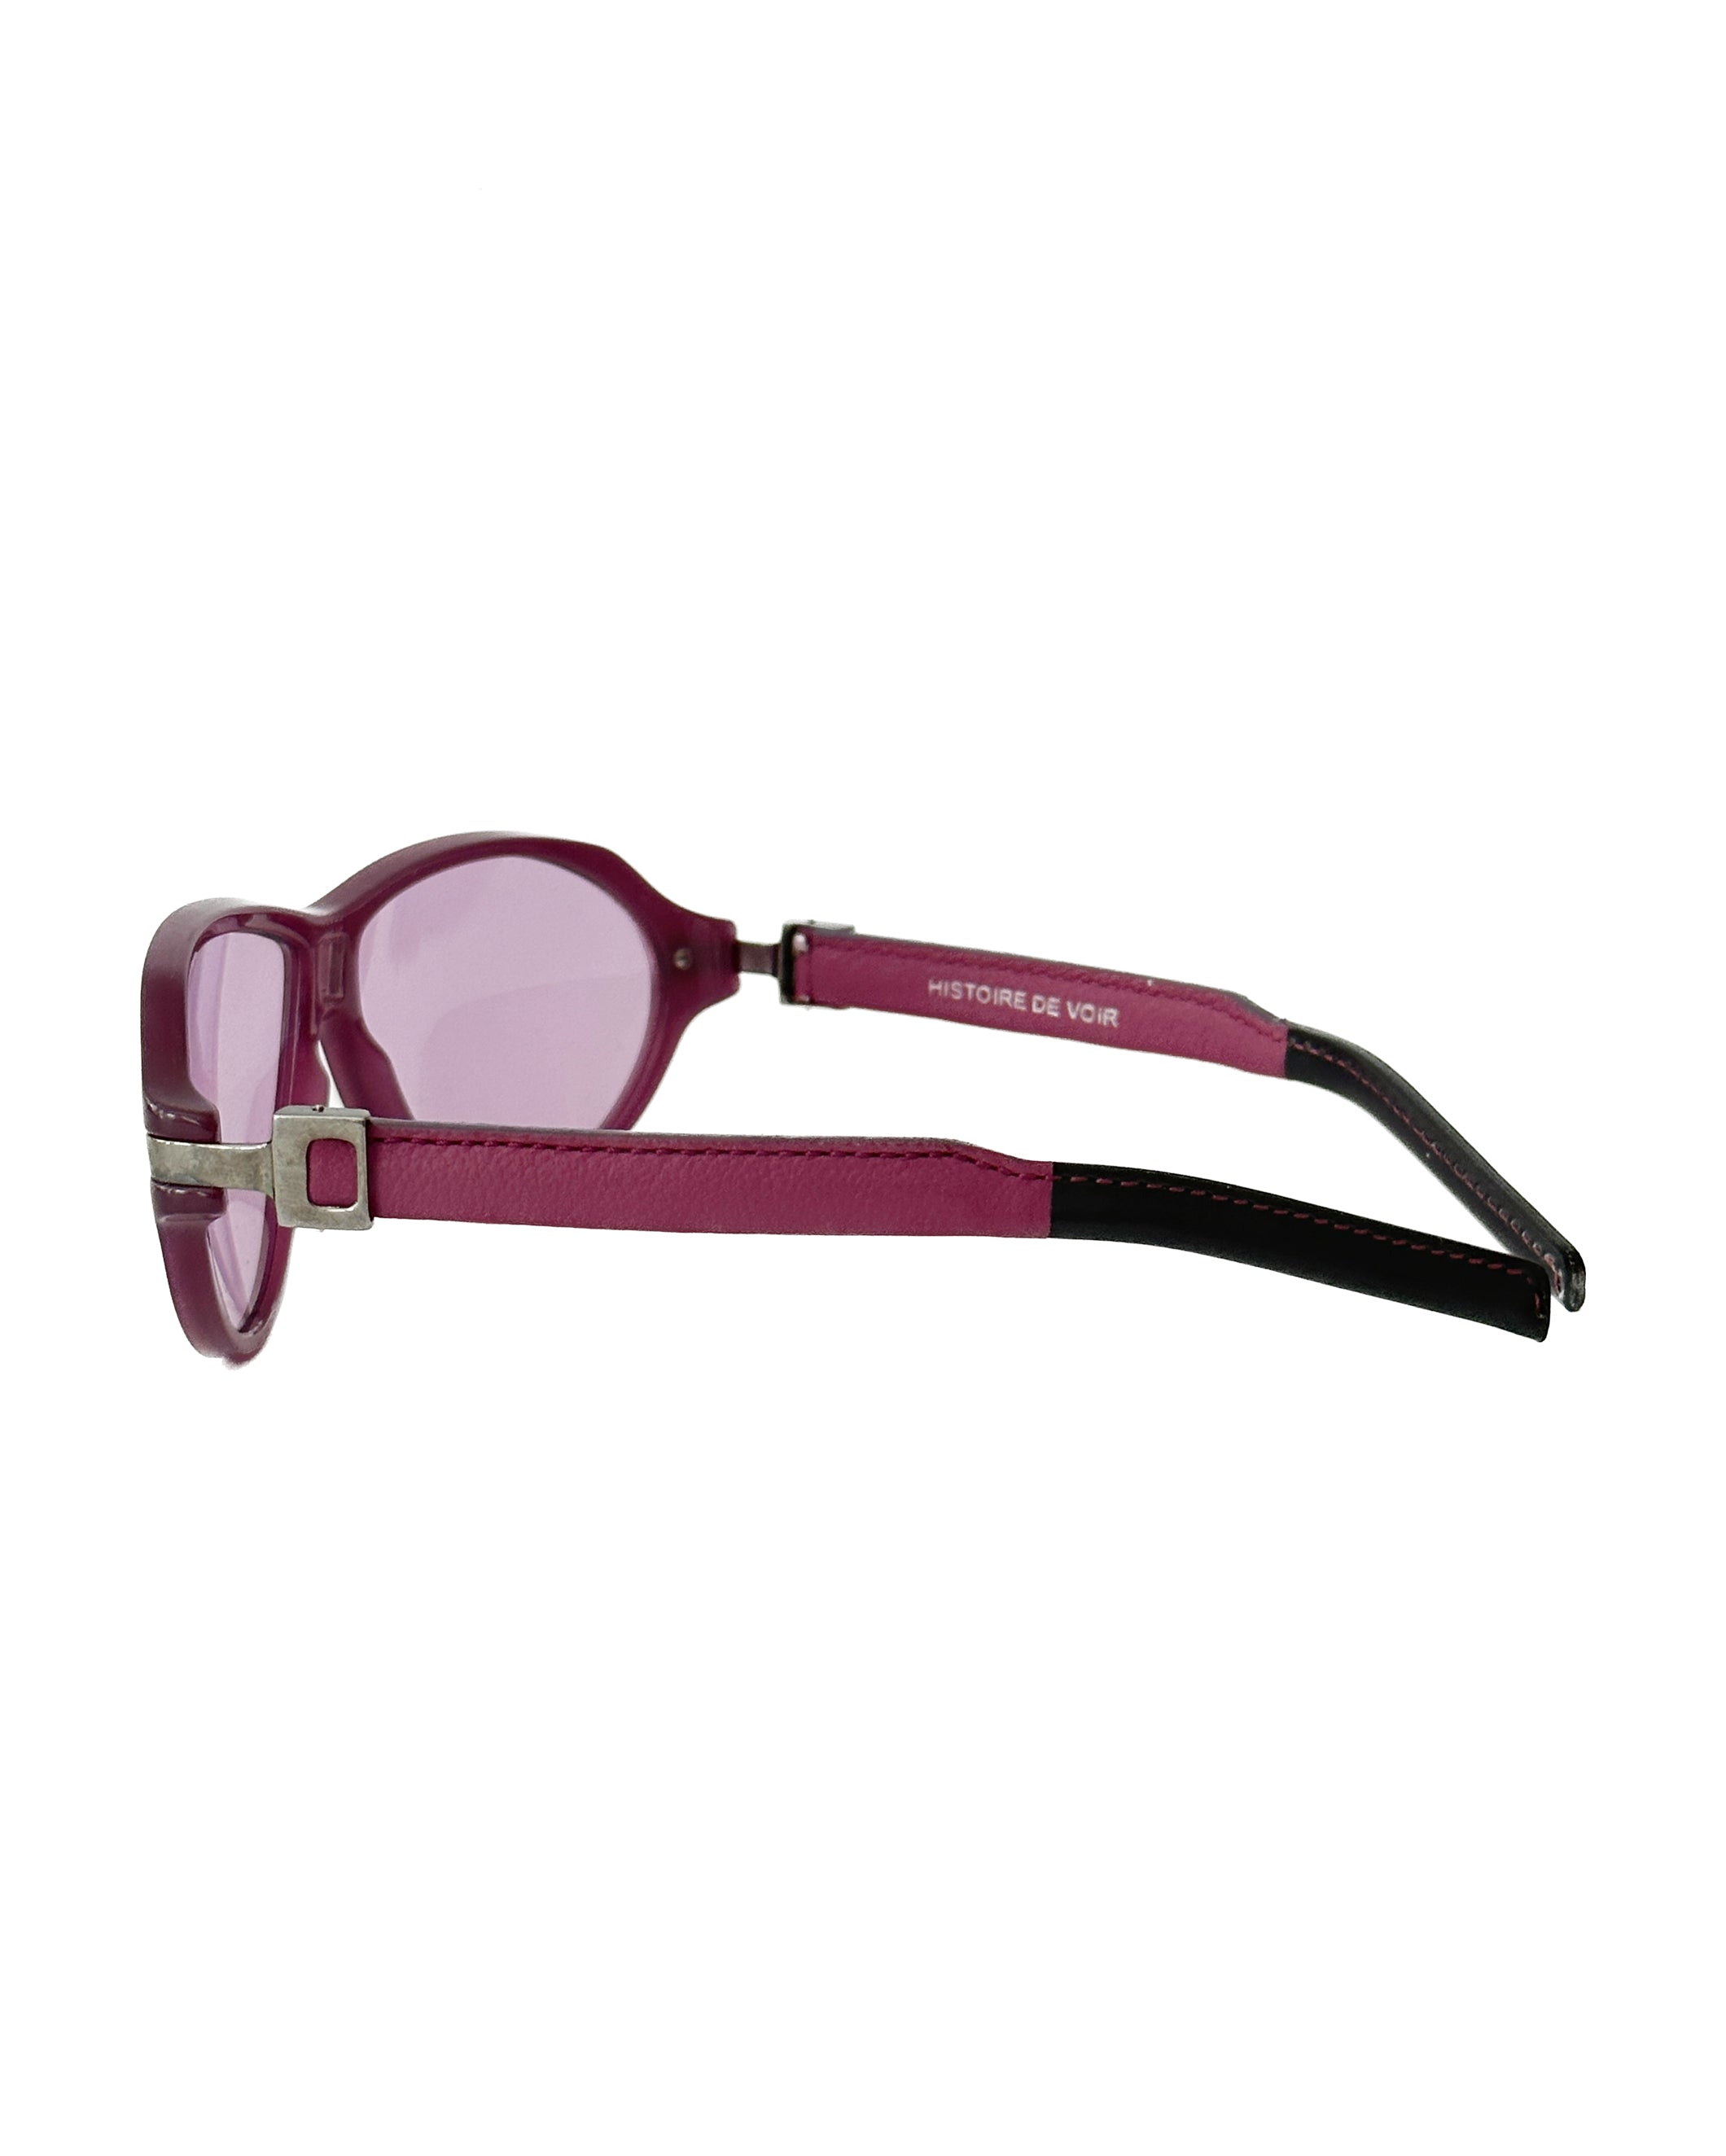 HISTORIE DE VOIR Leather Pink Sunglasses